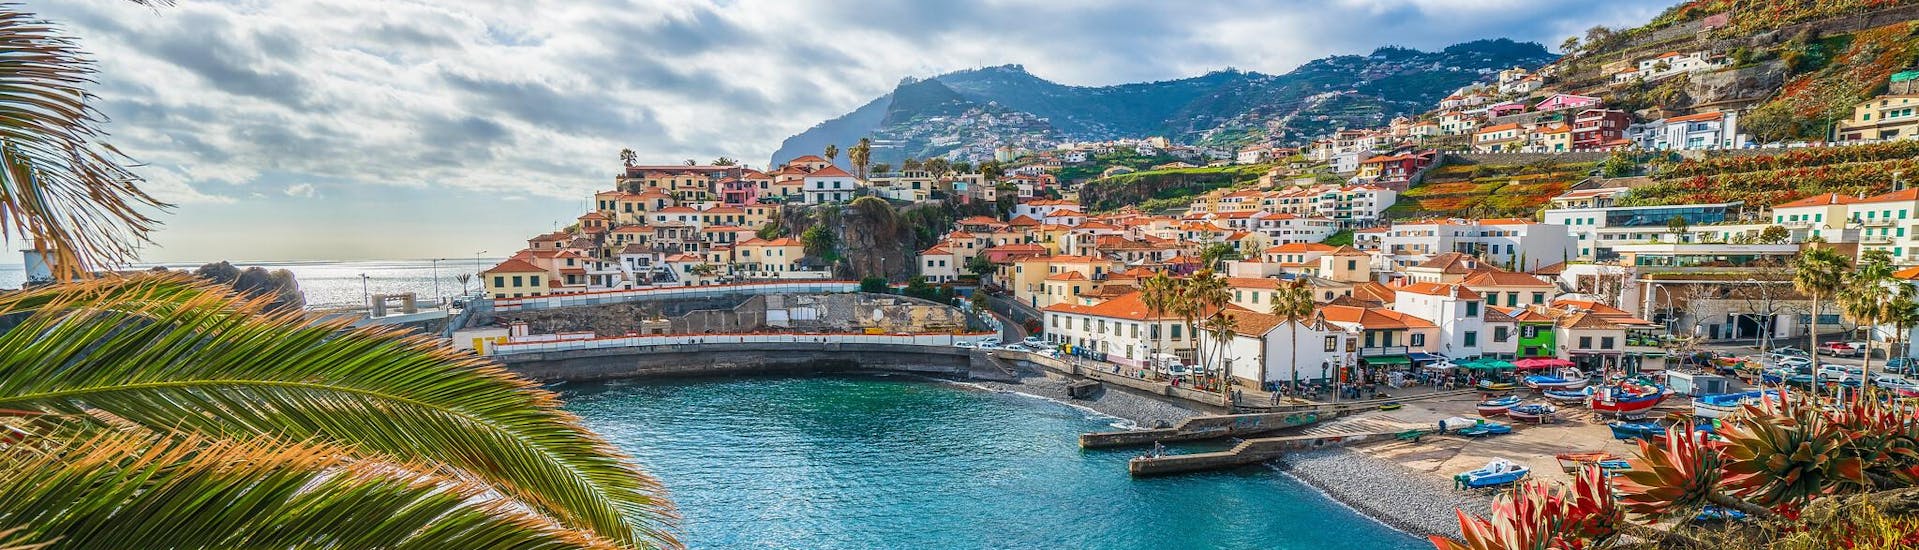 Immagine della costa e delle case colorate del villaggio di Funchal